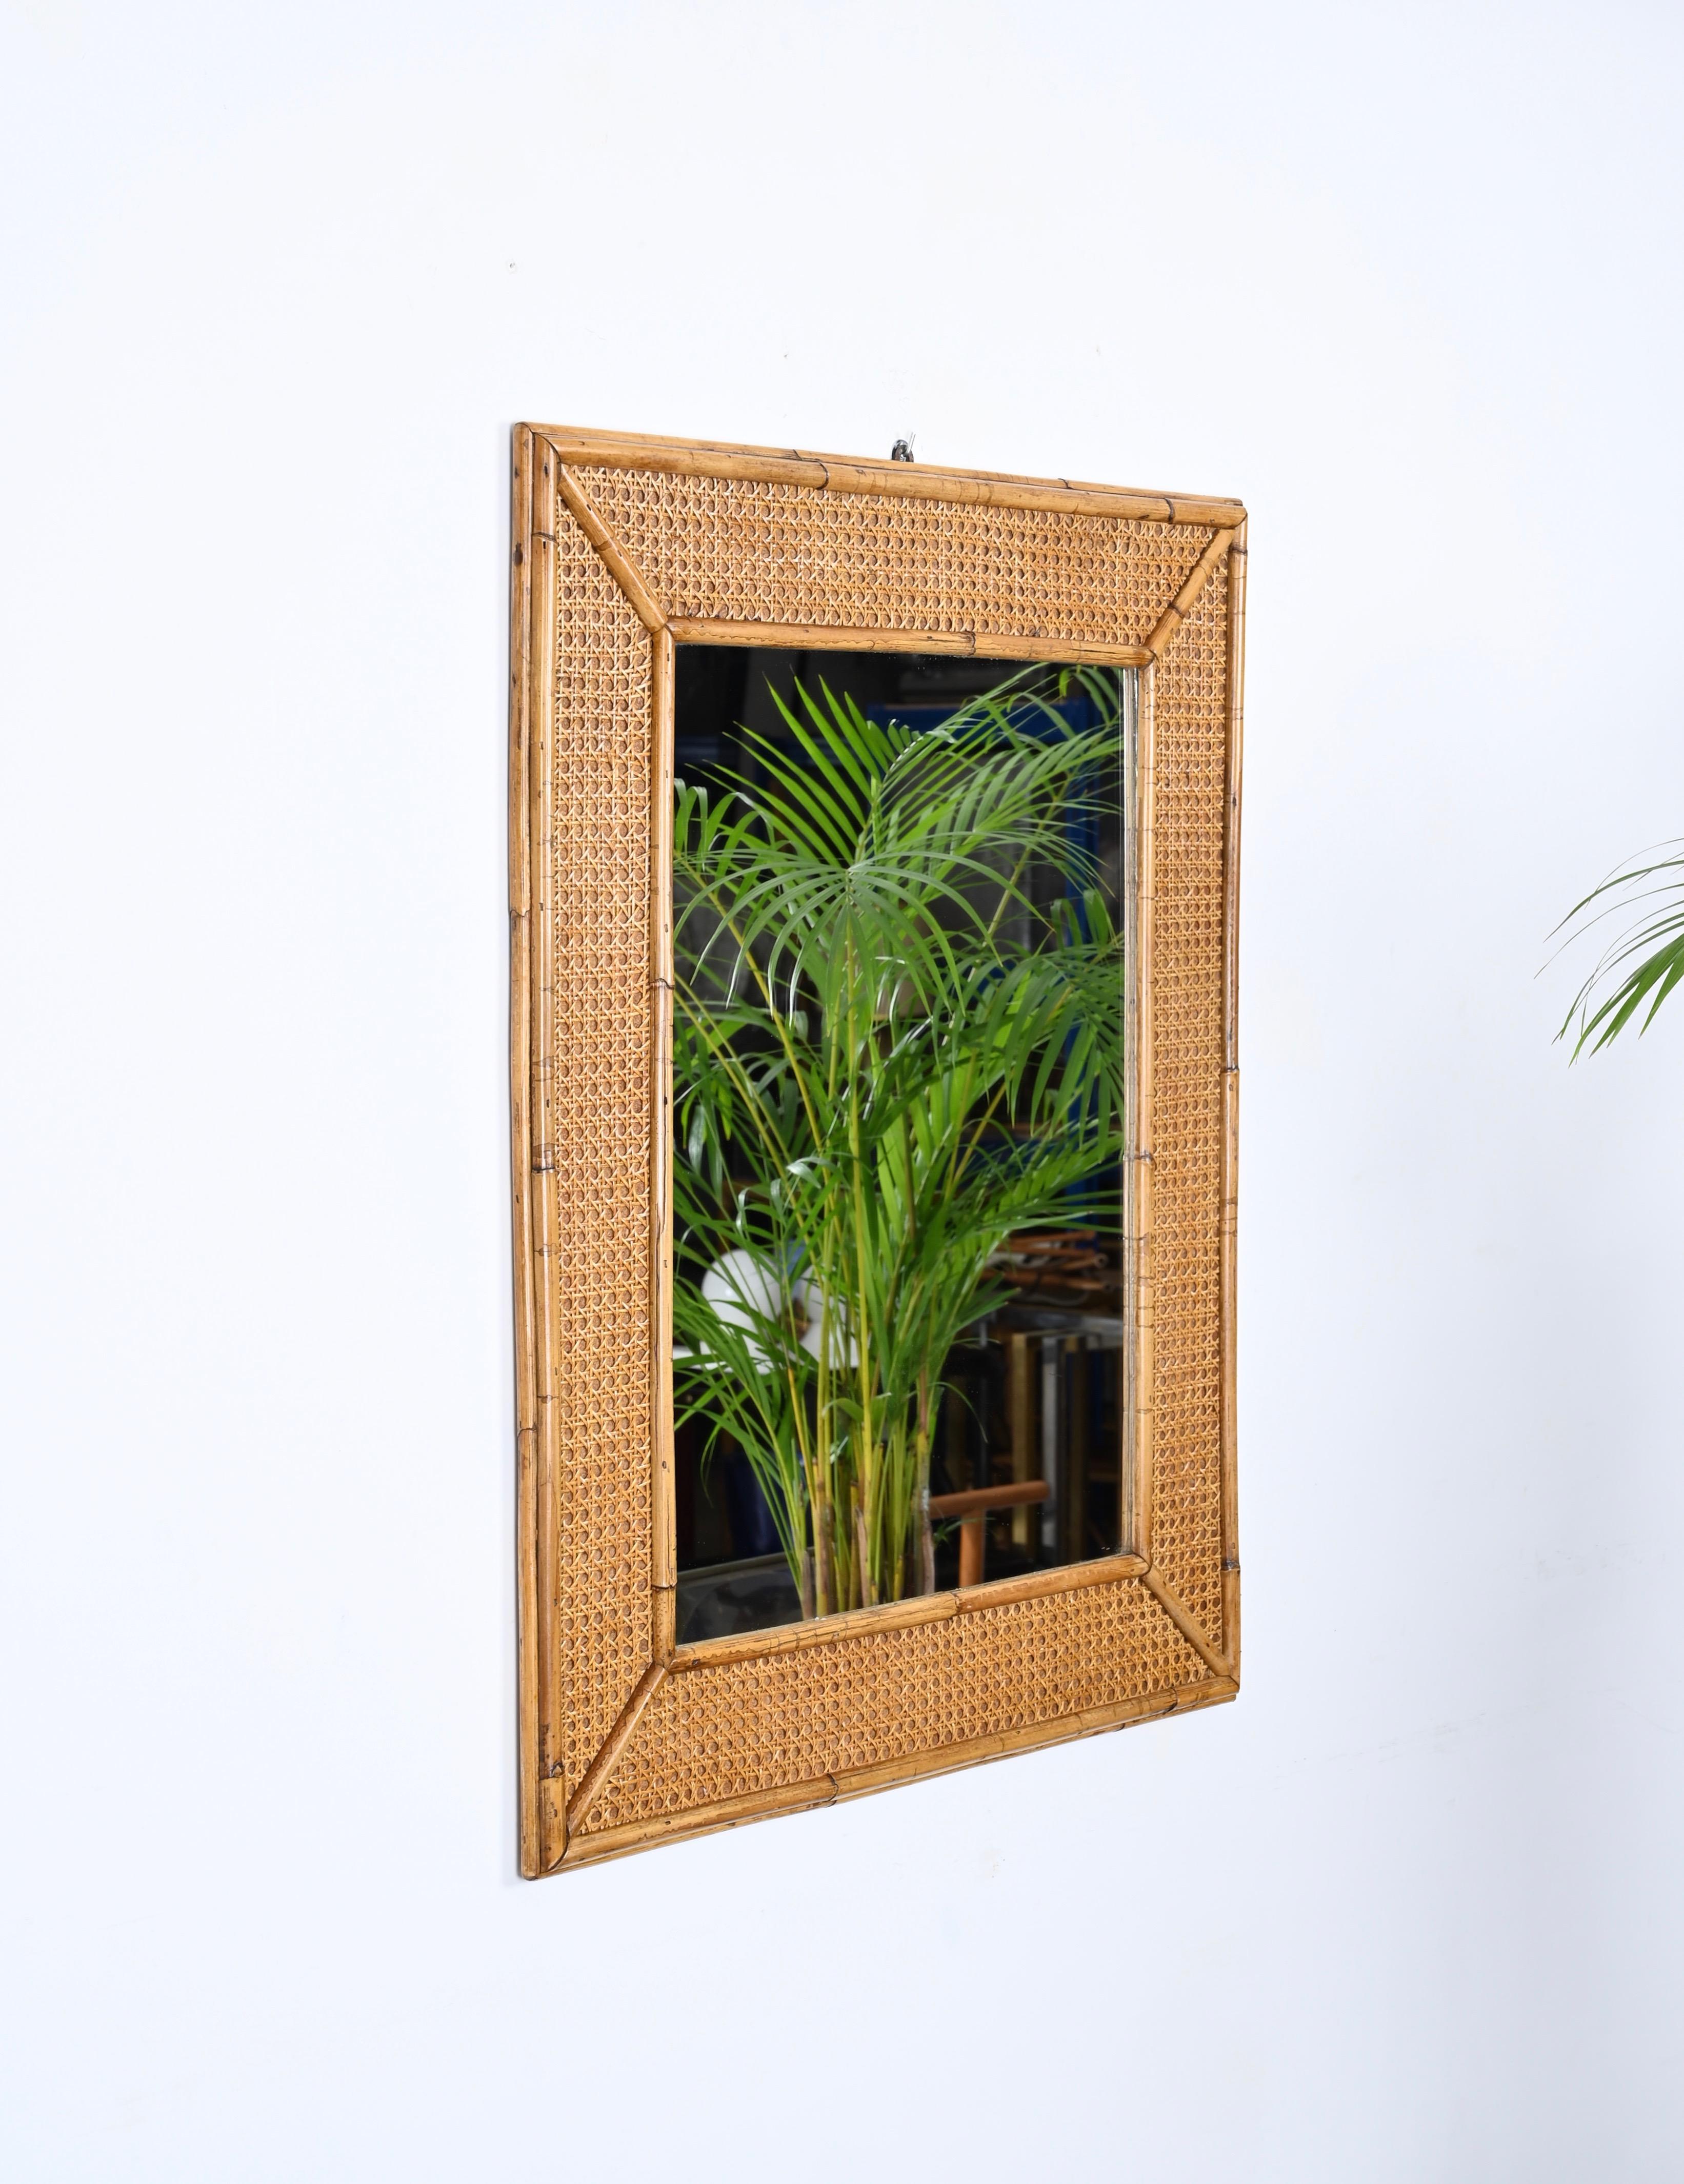 Spectaculaire miroir rectangulaire du milieu du siècle en bambou et osier tressé à la main. Cet objet exceptionnel a été produit en Italie dans les années 1970.

Ce grand miroir est incroyable grâce à son cadre complexe : il a une partie intérieure